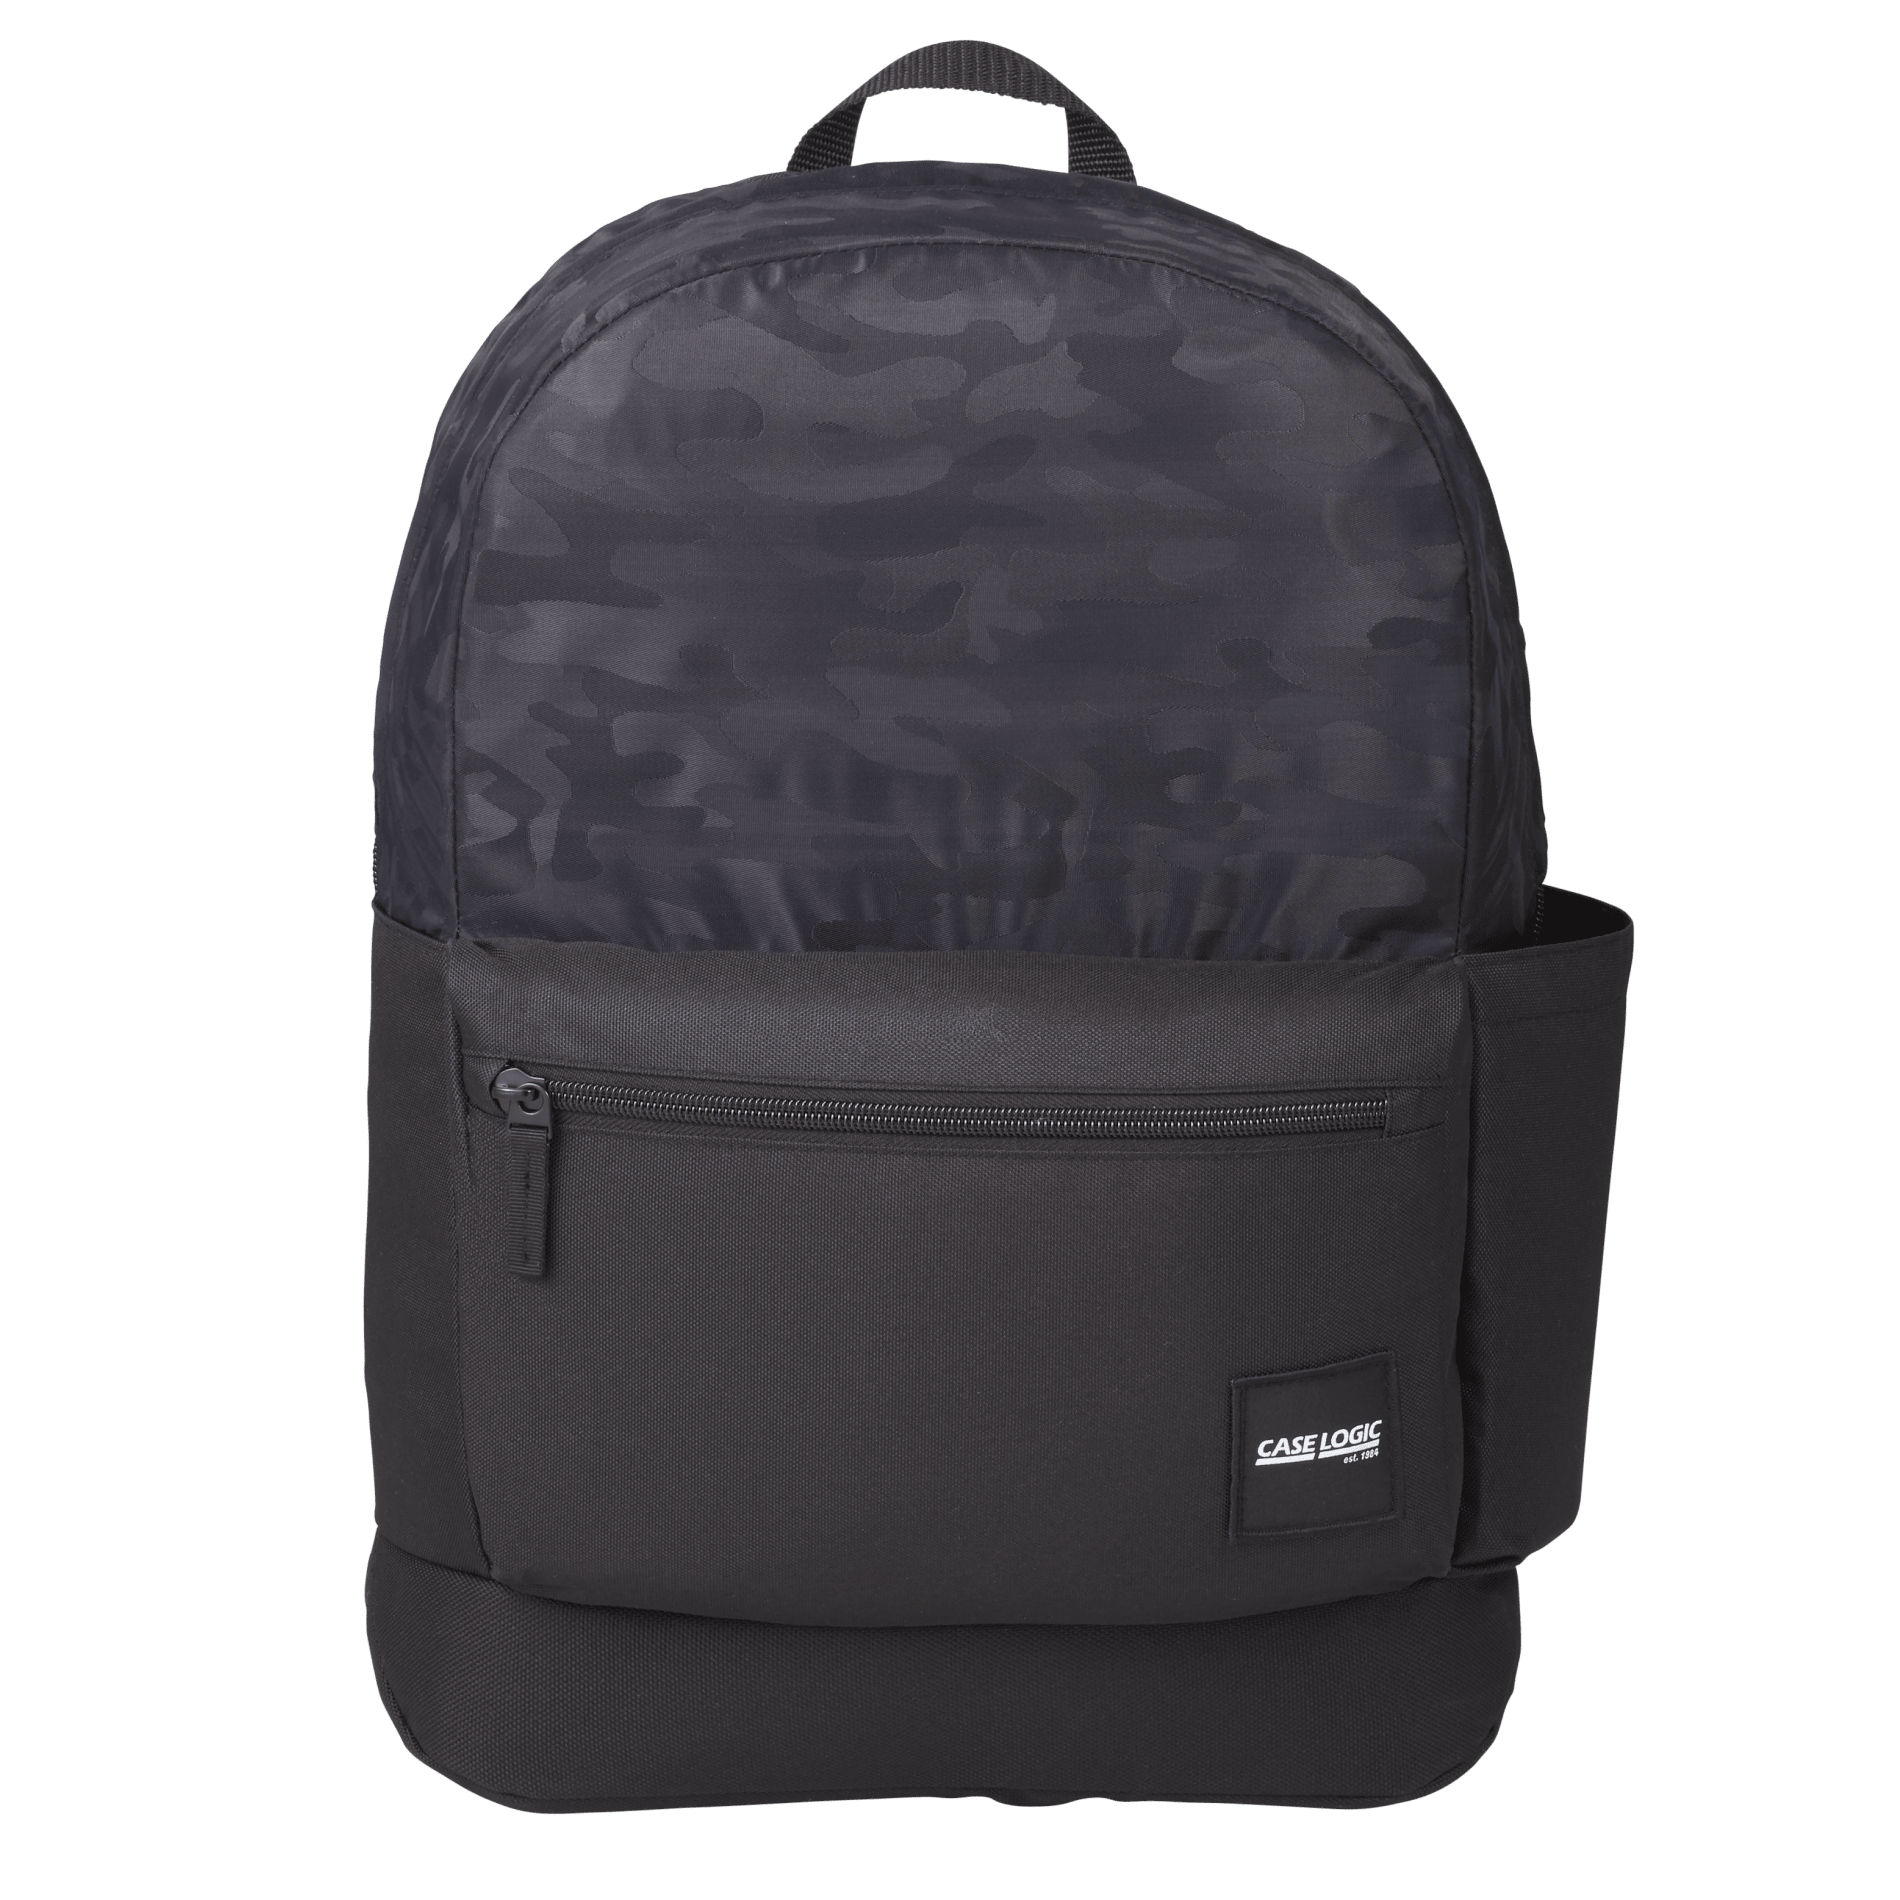 Case Logic 8150-55 - Founder Backpack